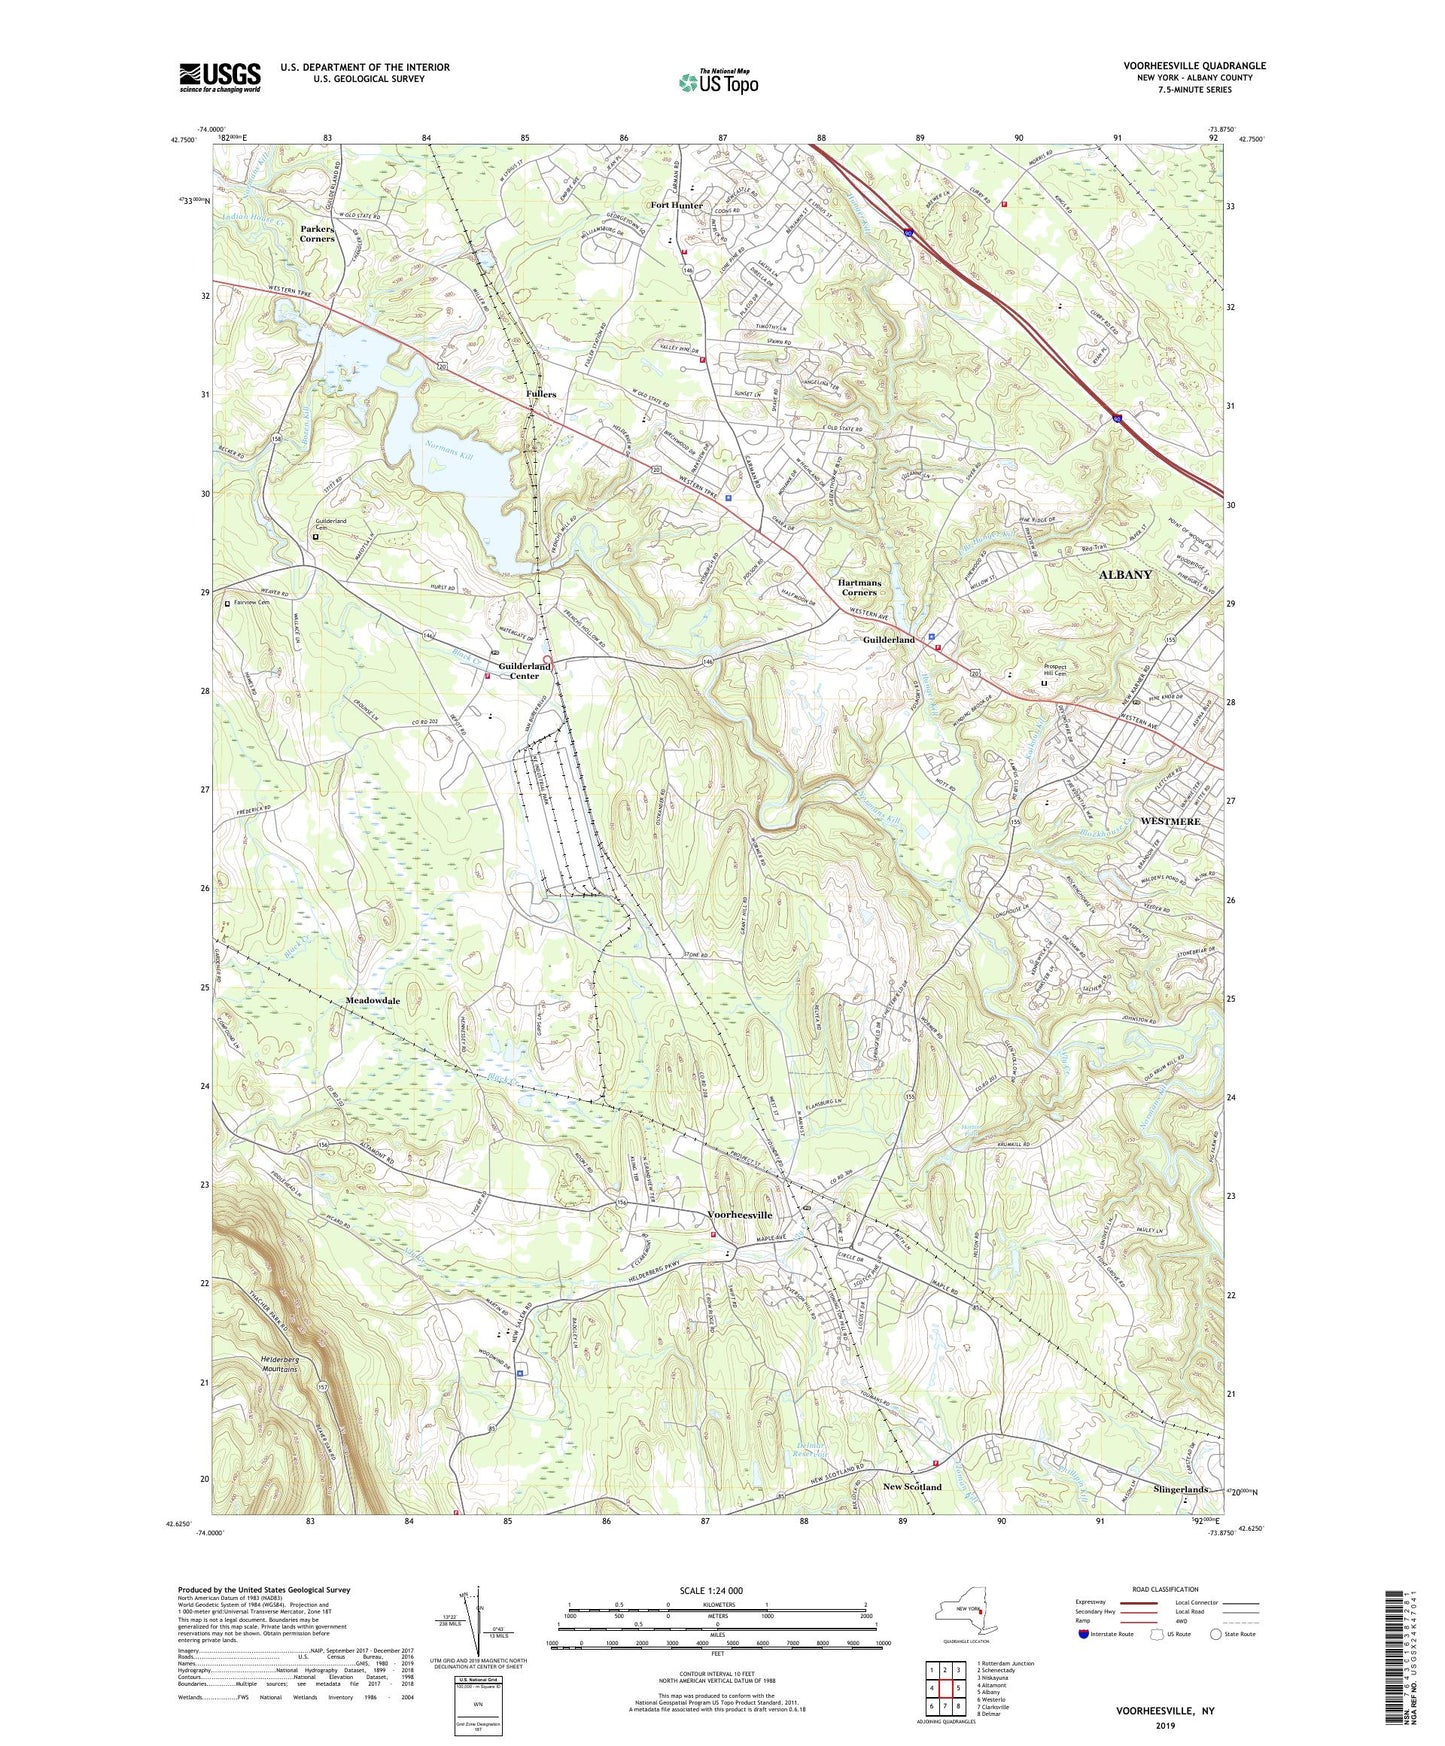 Voorheesville New York US Topo Map Image